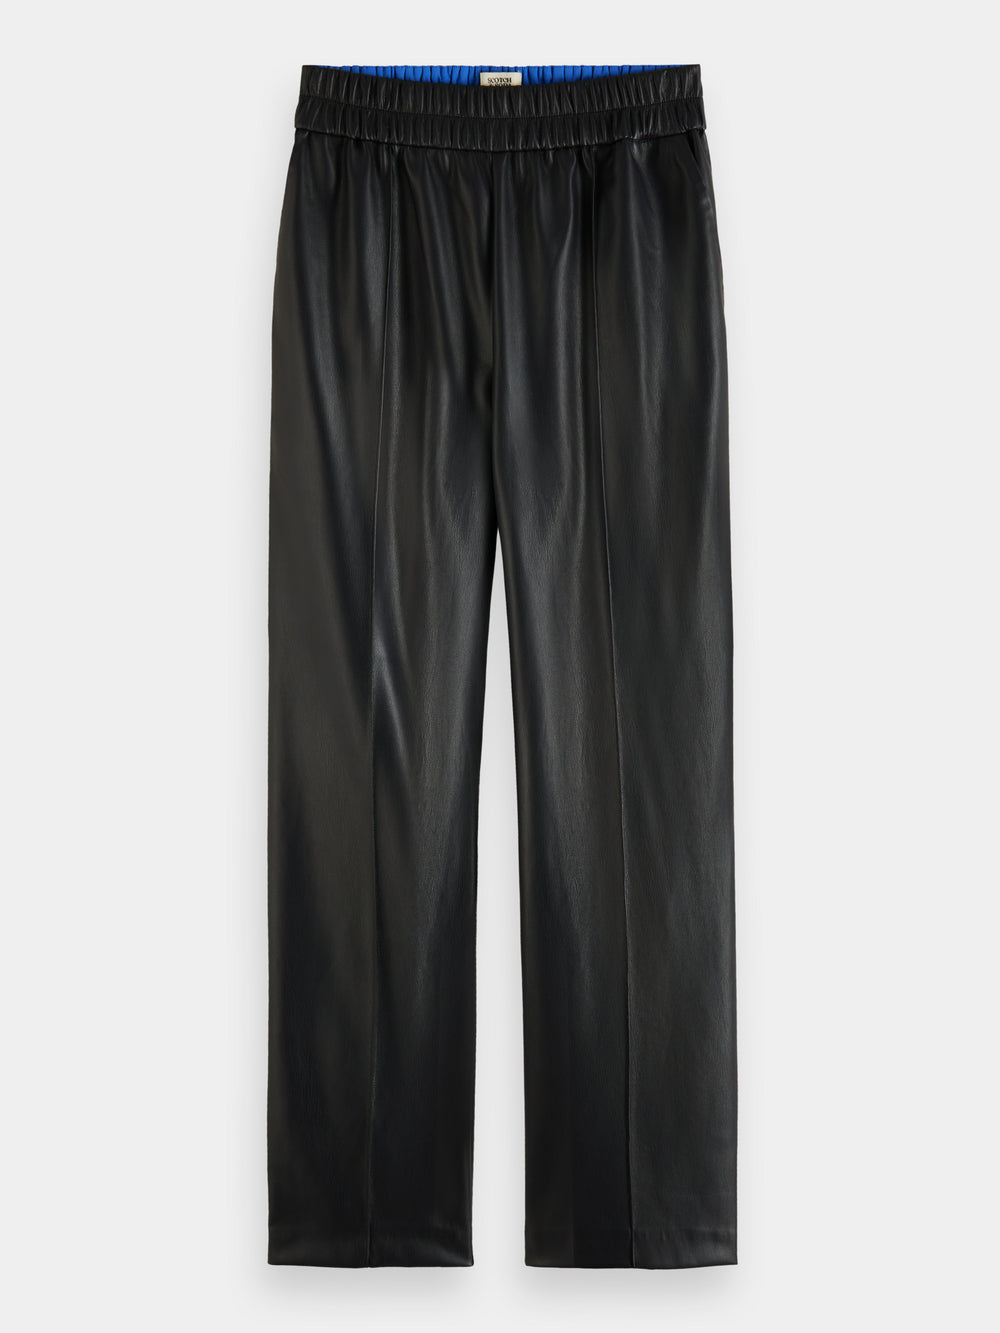 Estelle faux leather jogger pants - Scotch & Soda NZ